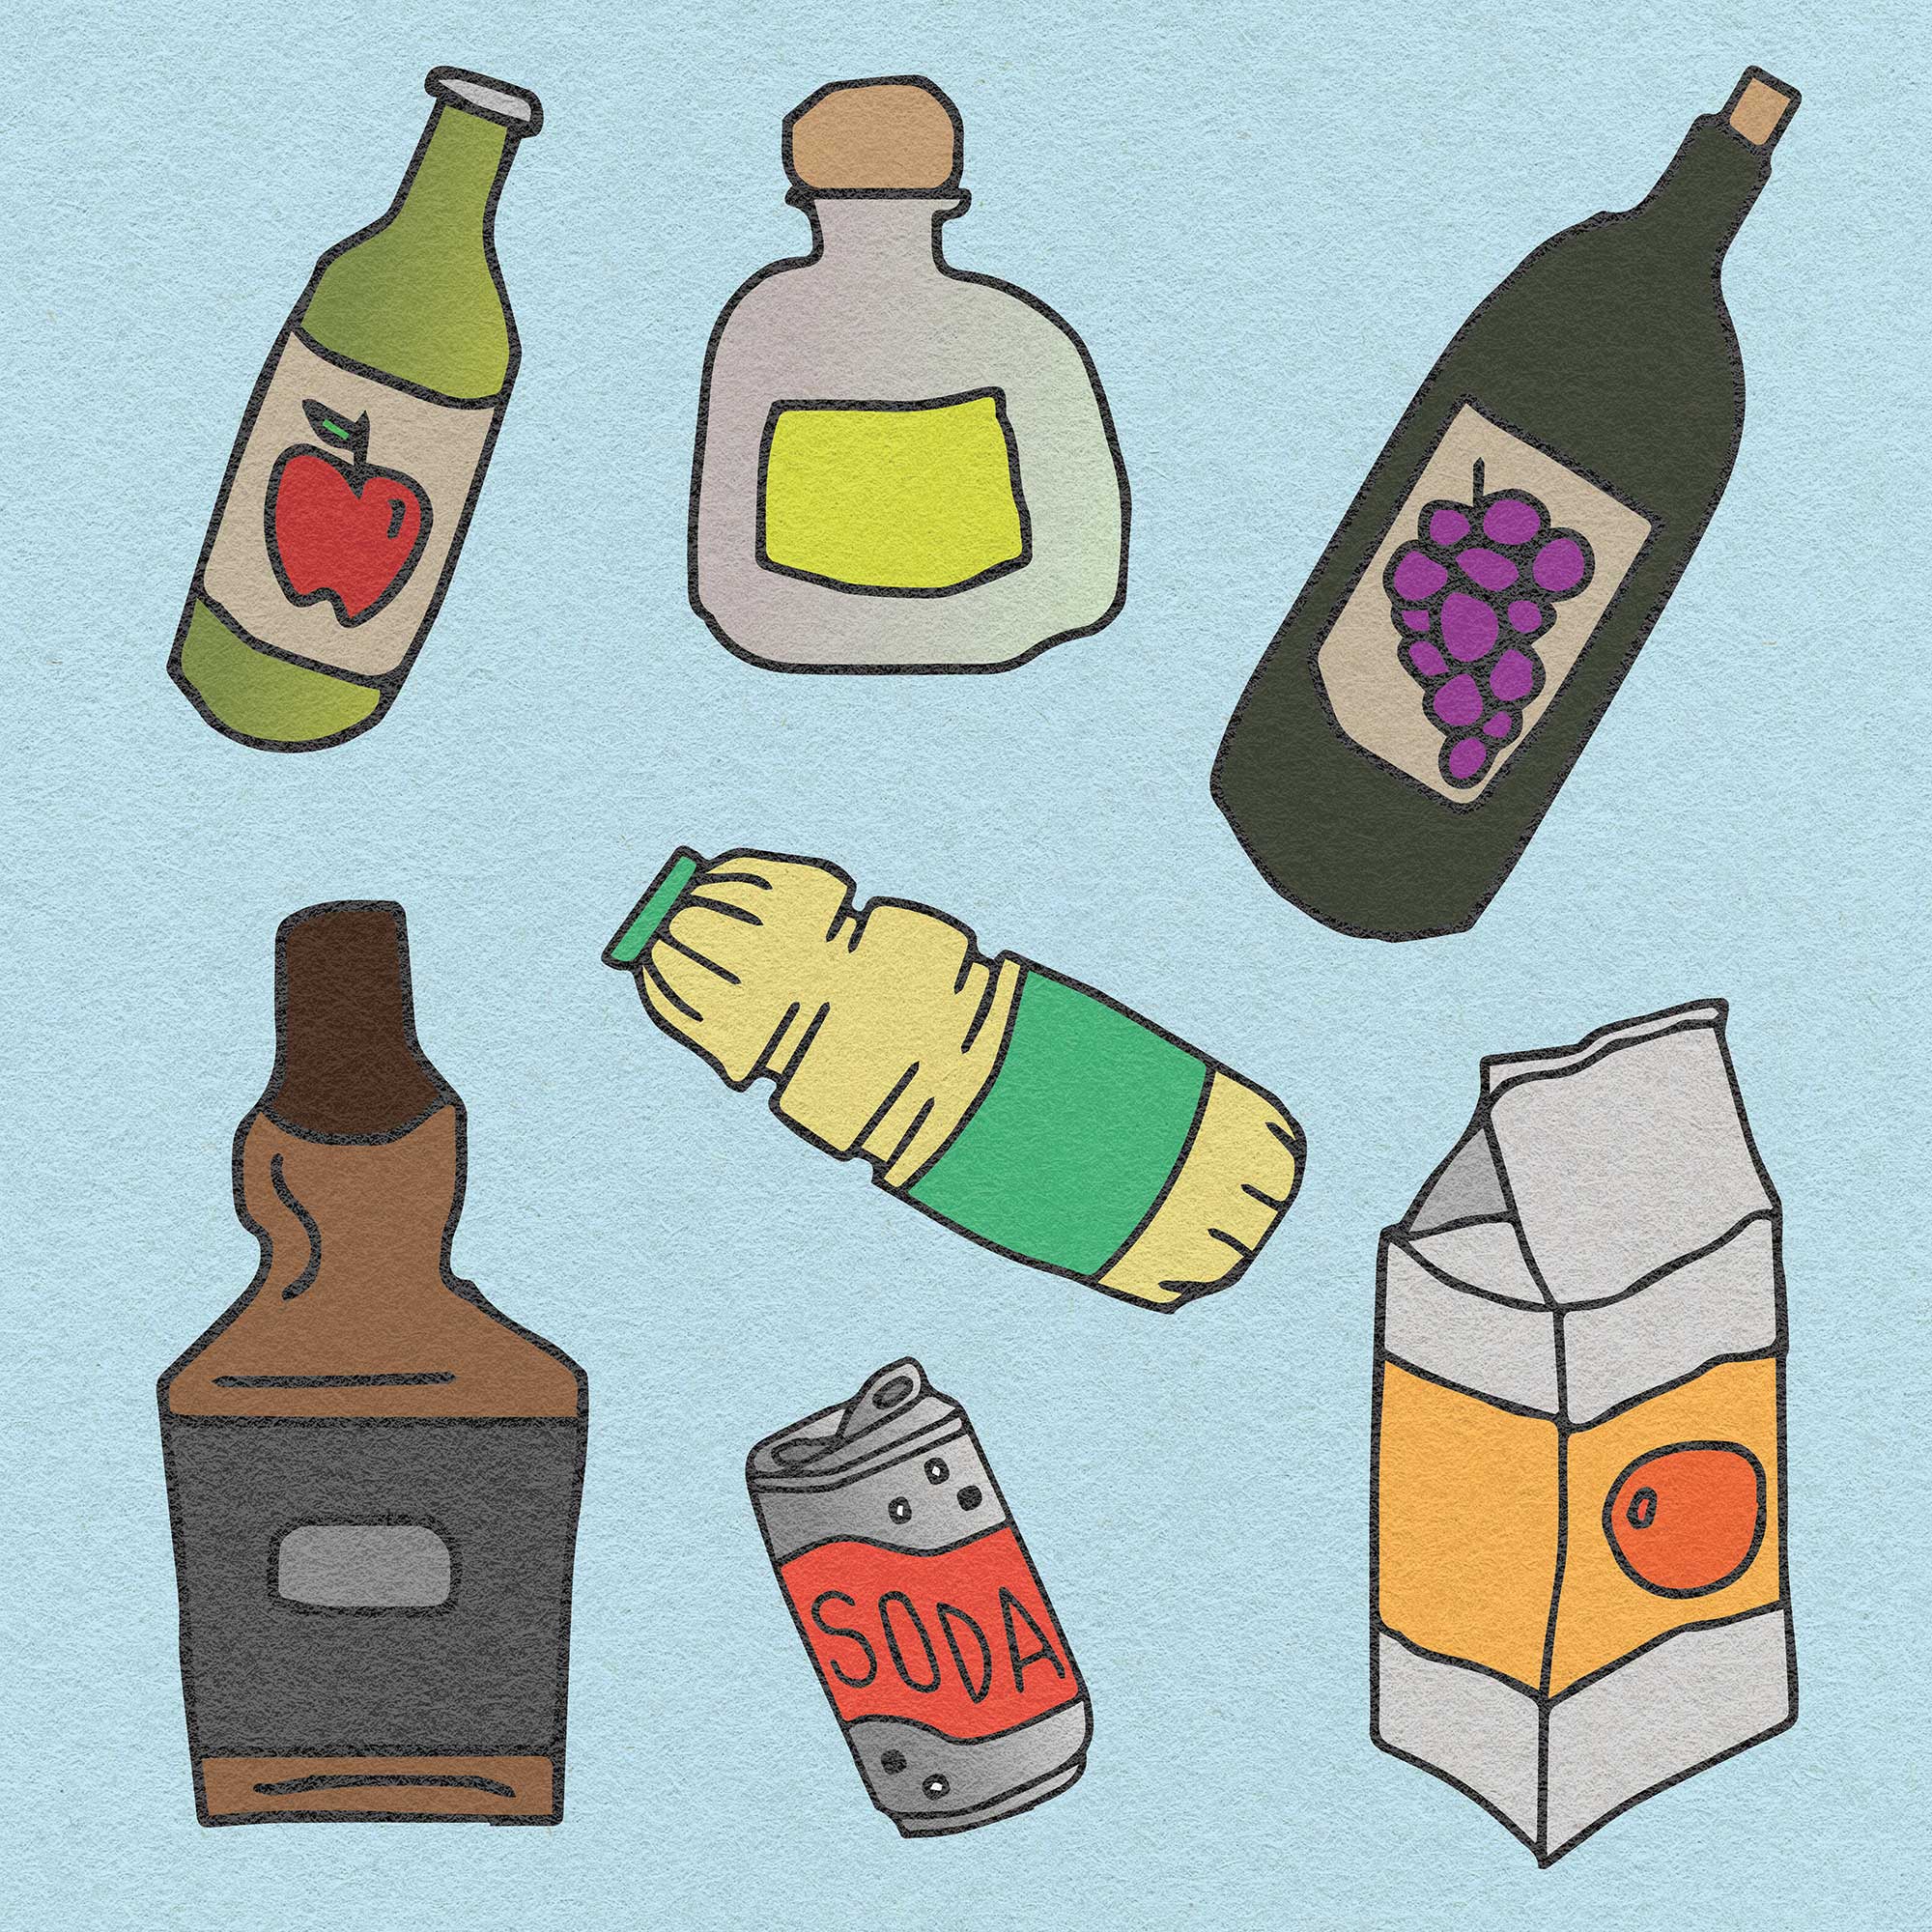 Illustration of gluten-free beverages on a light blue background